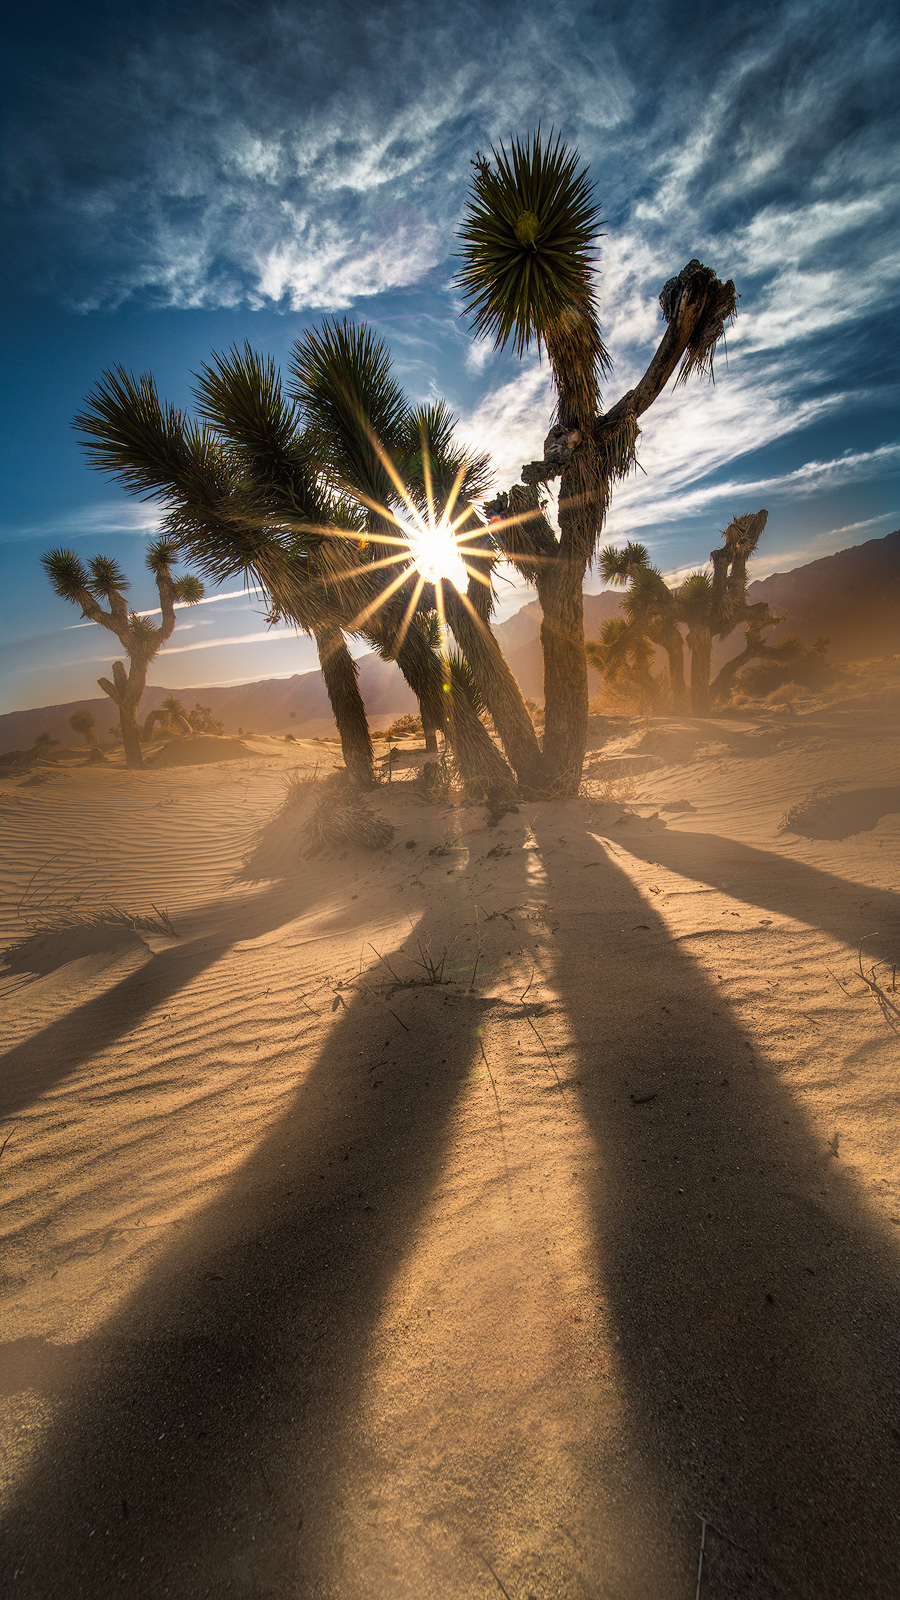 california, joshua tree, desert, sunburst, sand dune, sun, wind, clouds, landscape